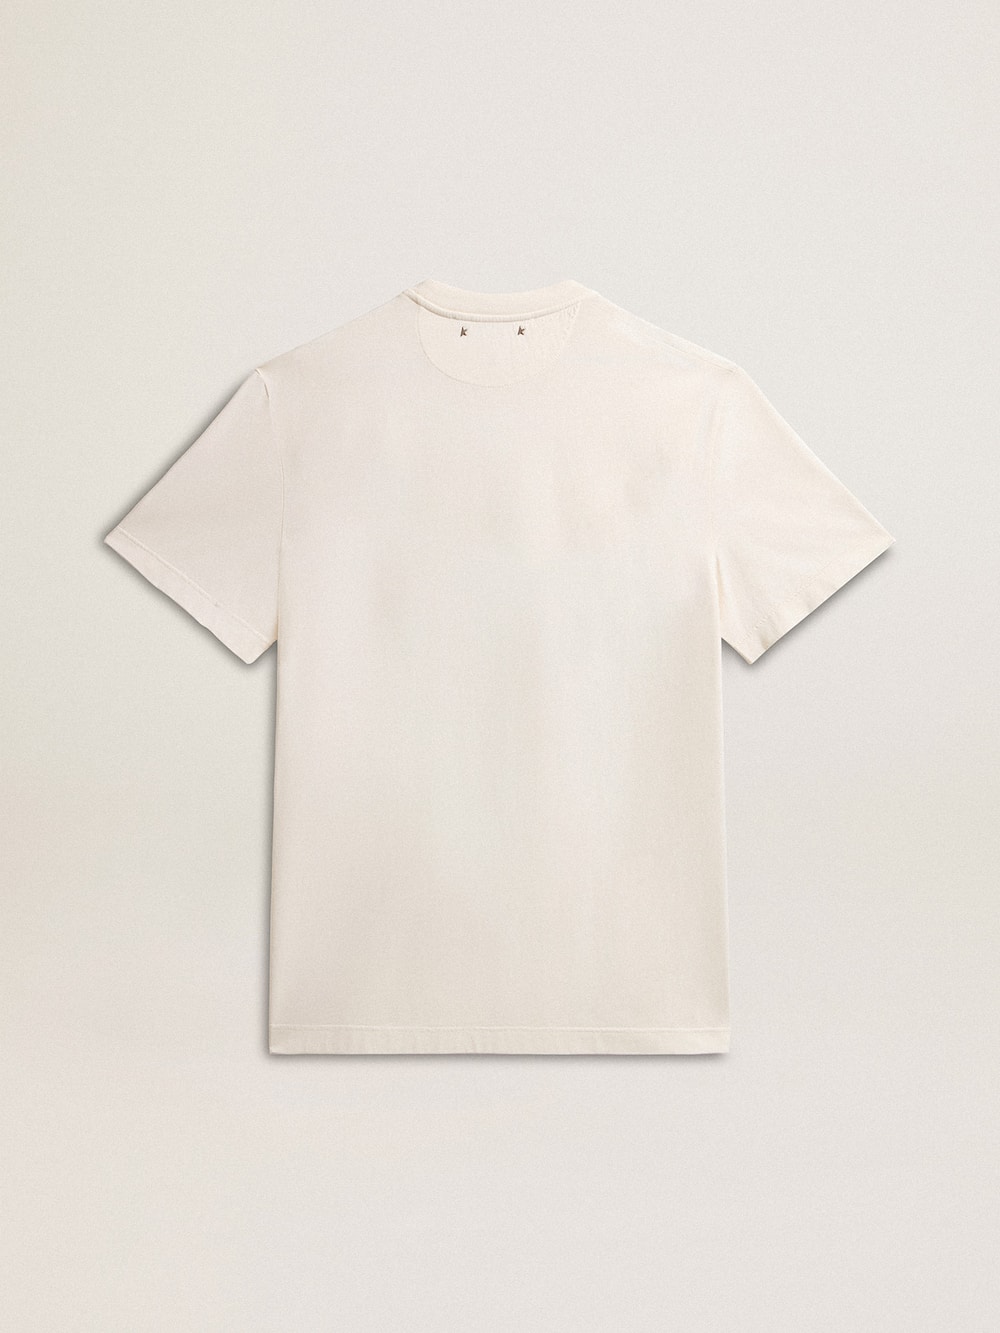 Golden Goose - Camiseta de hombre en algodón color blanco envejecido y estampado en el corazón in 